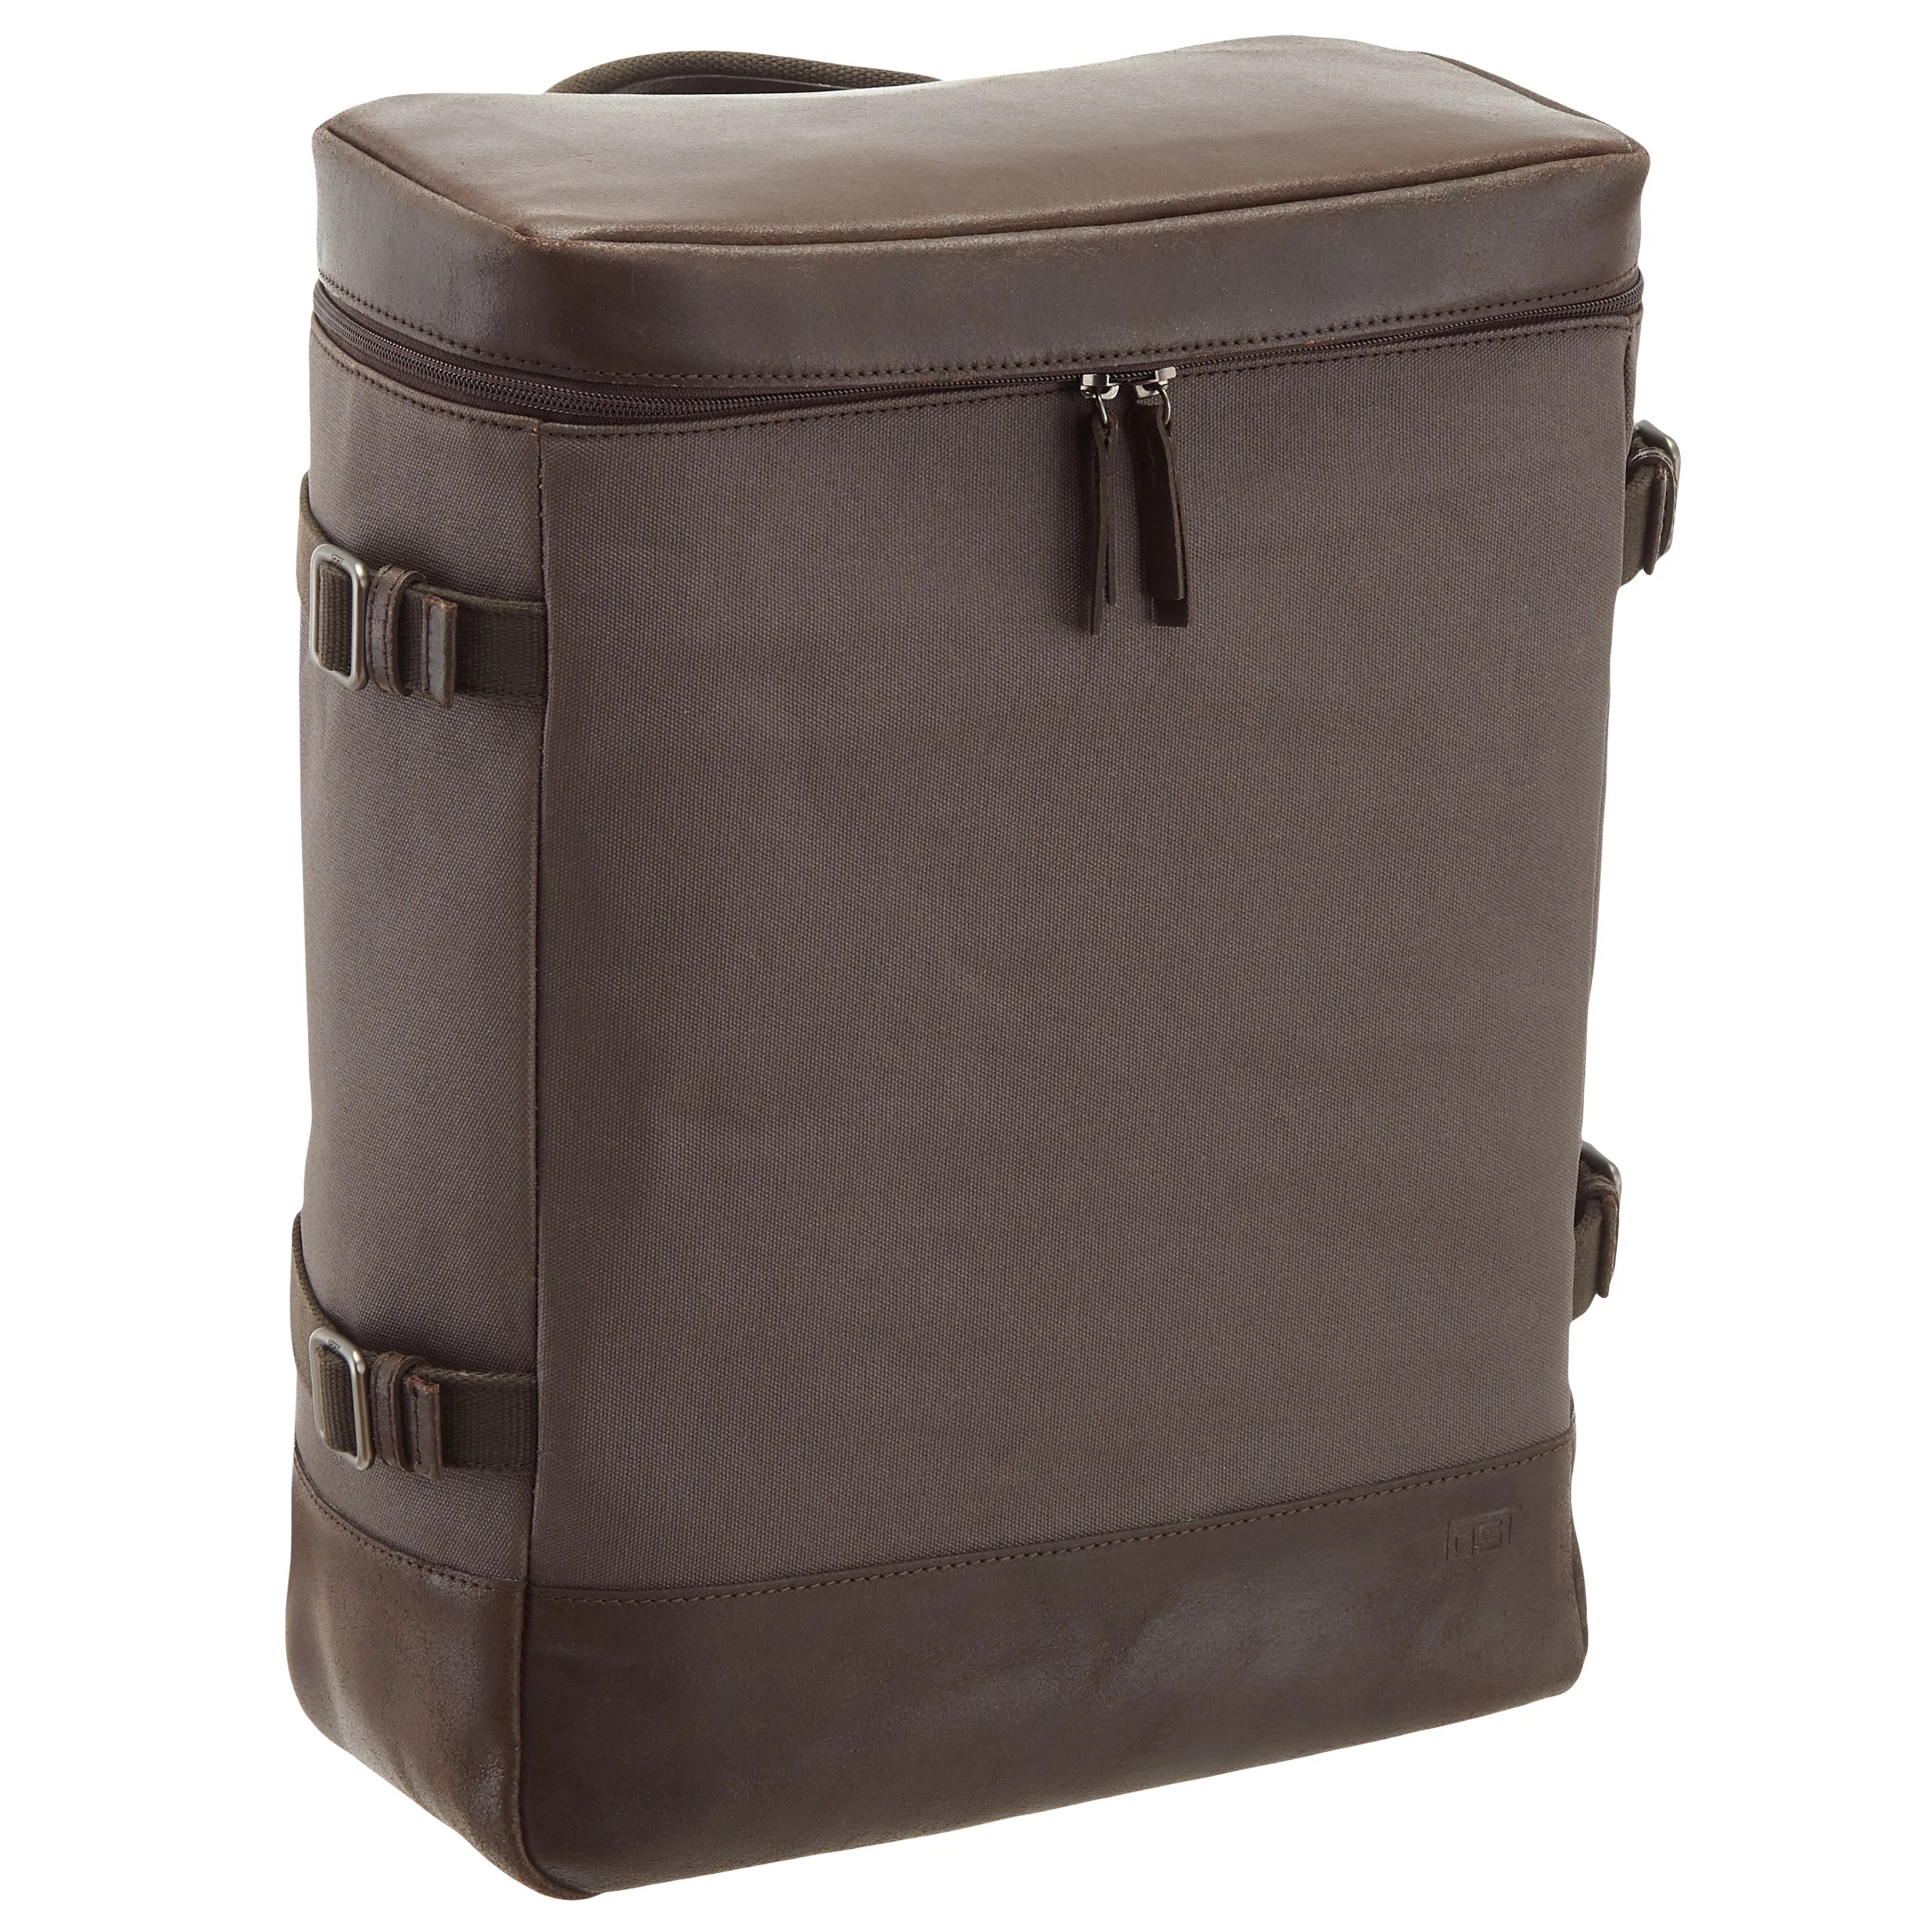 Jost Varberg daypack backpack 44 cm - brown